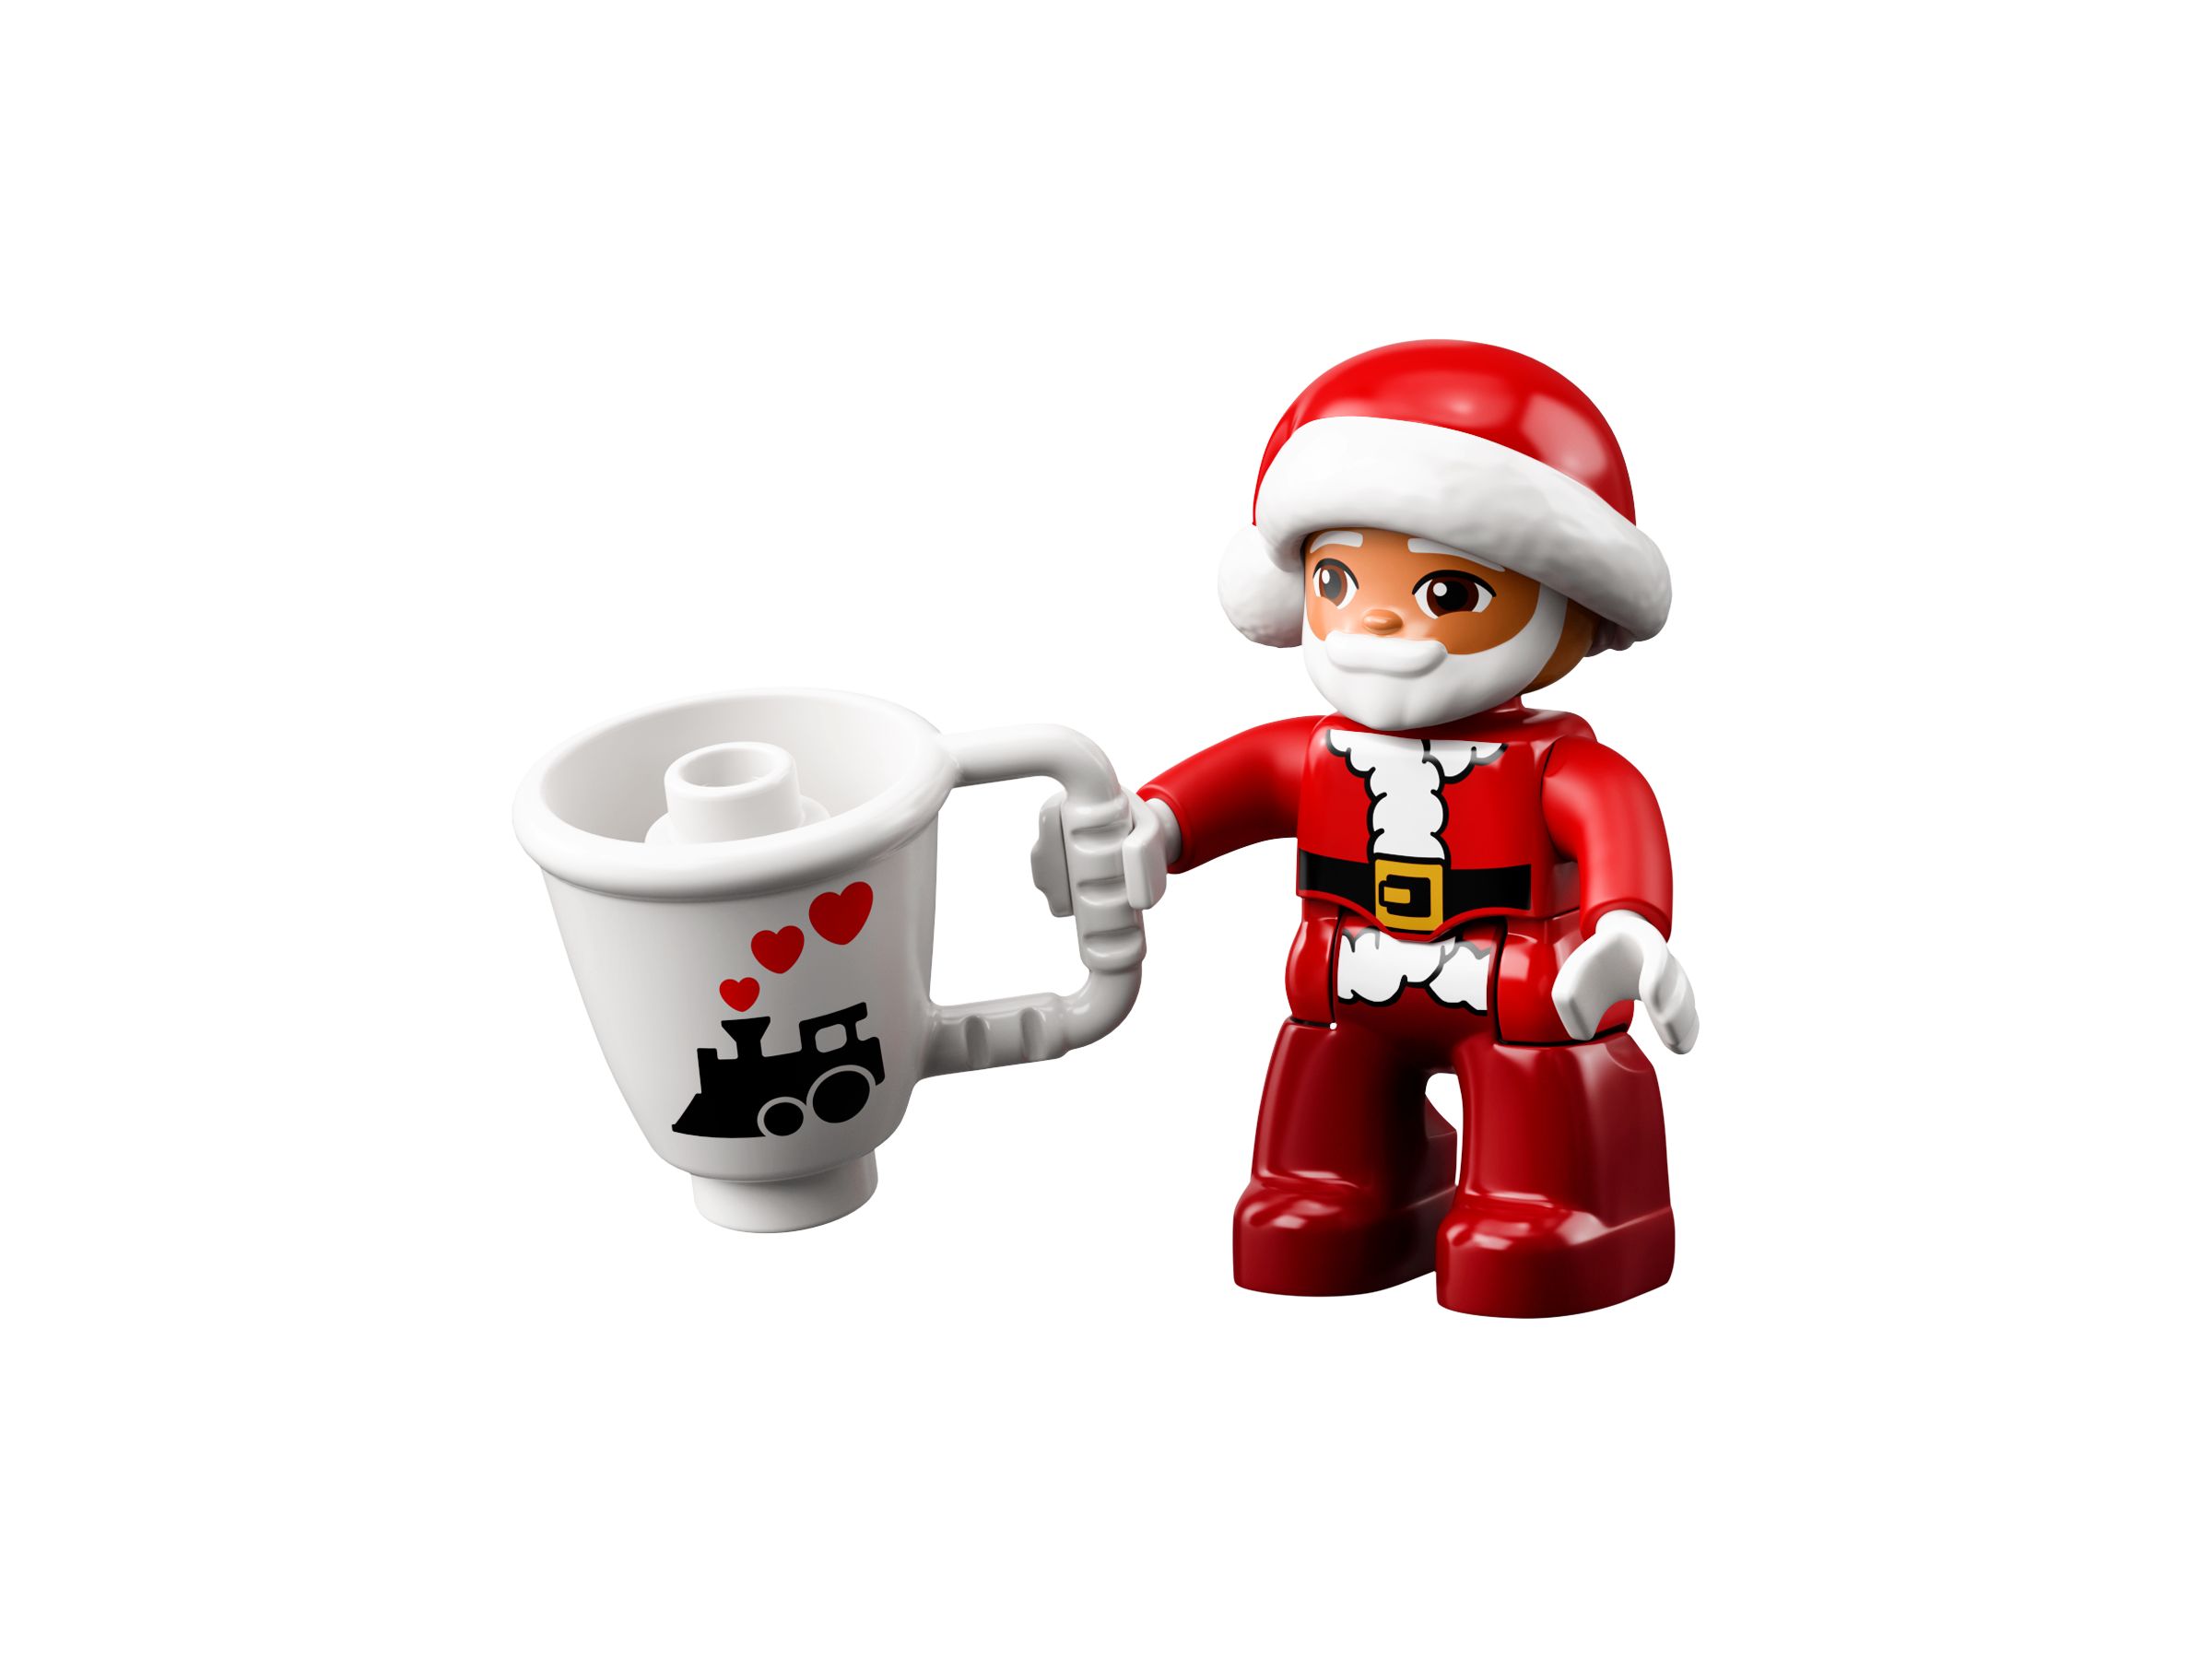 LEGO Duplo 10976 Lebkuchenhaus mit Weihnachtsmann LEGO_10976_alt4.jpg